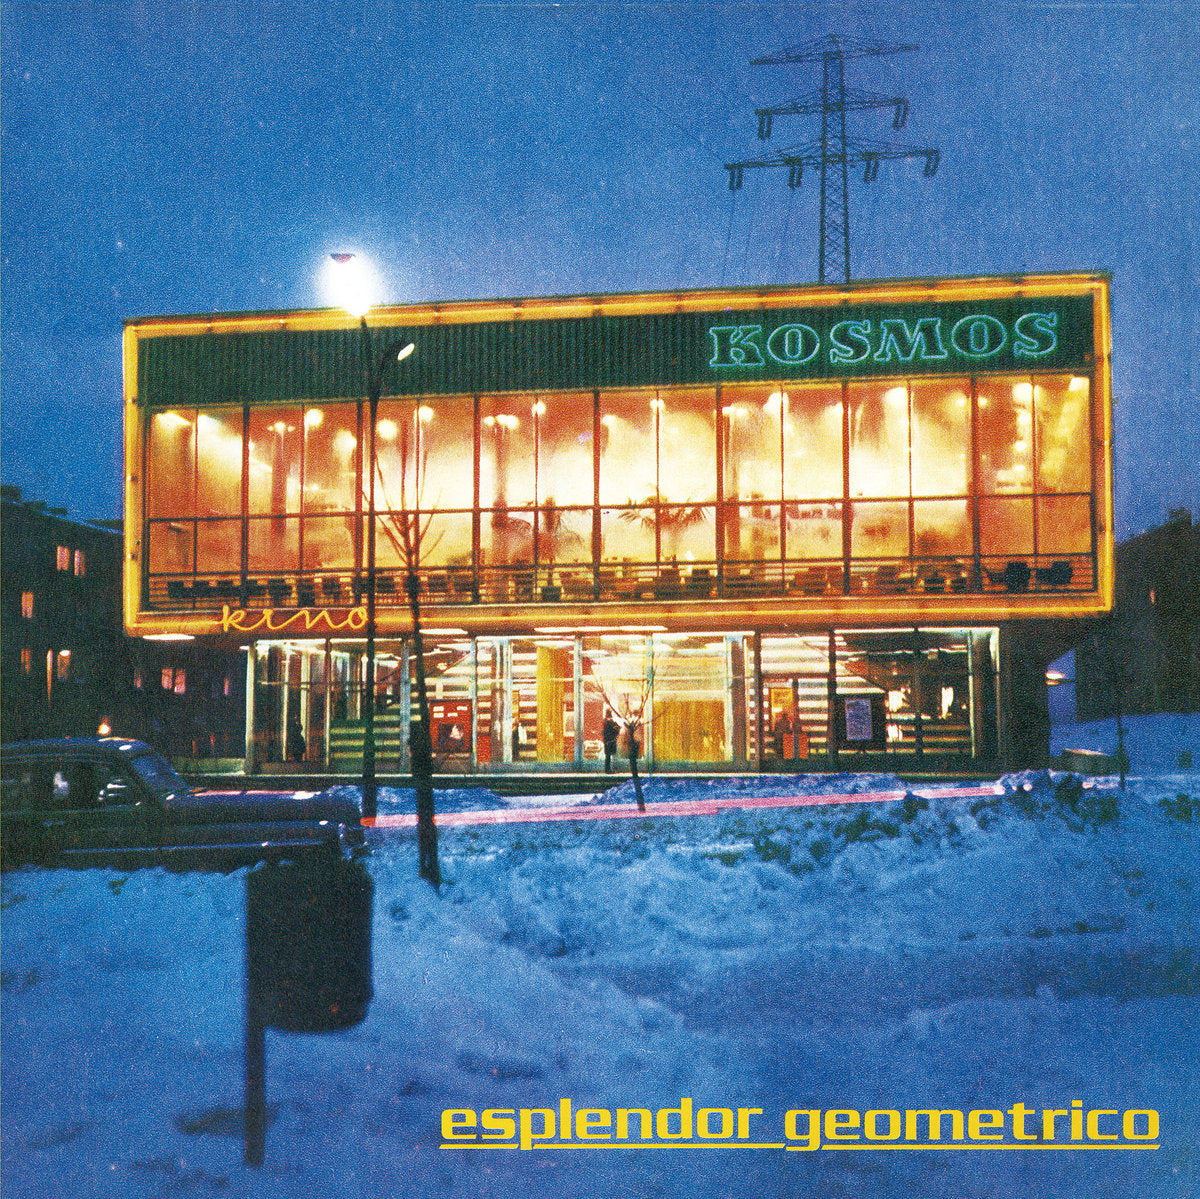 ESPLENDOR GEOMETRICO - KOSMOS KINO Vinyl LP